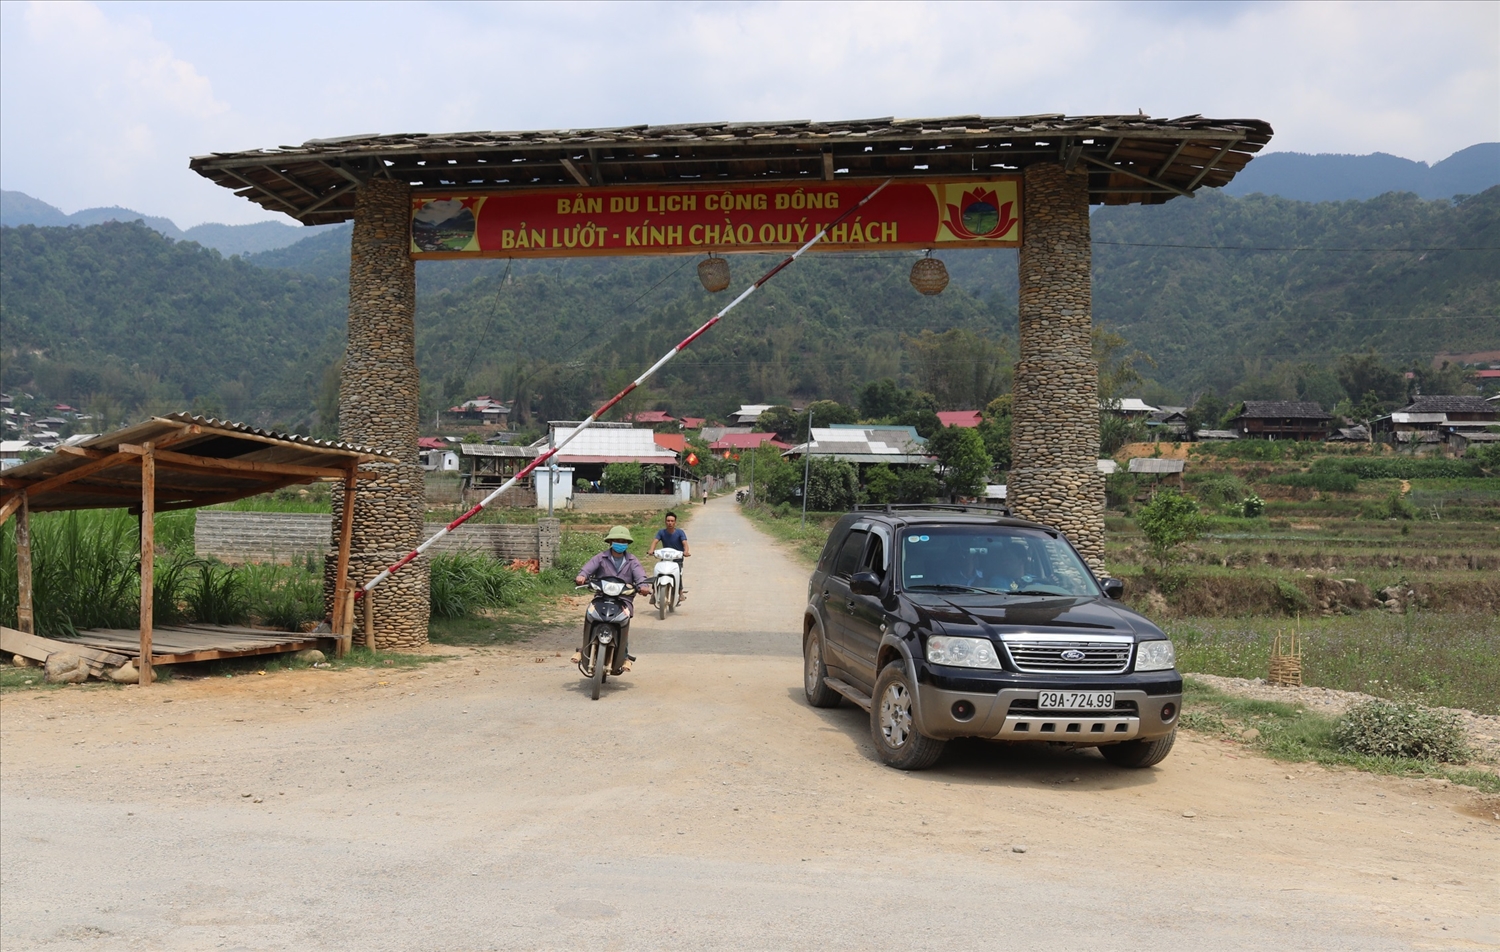 Bản Lướt là một trong những điểm du lịch cộng đồng của xã Ngọc Chiến, huyện Mường La.